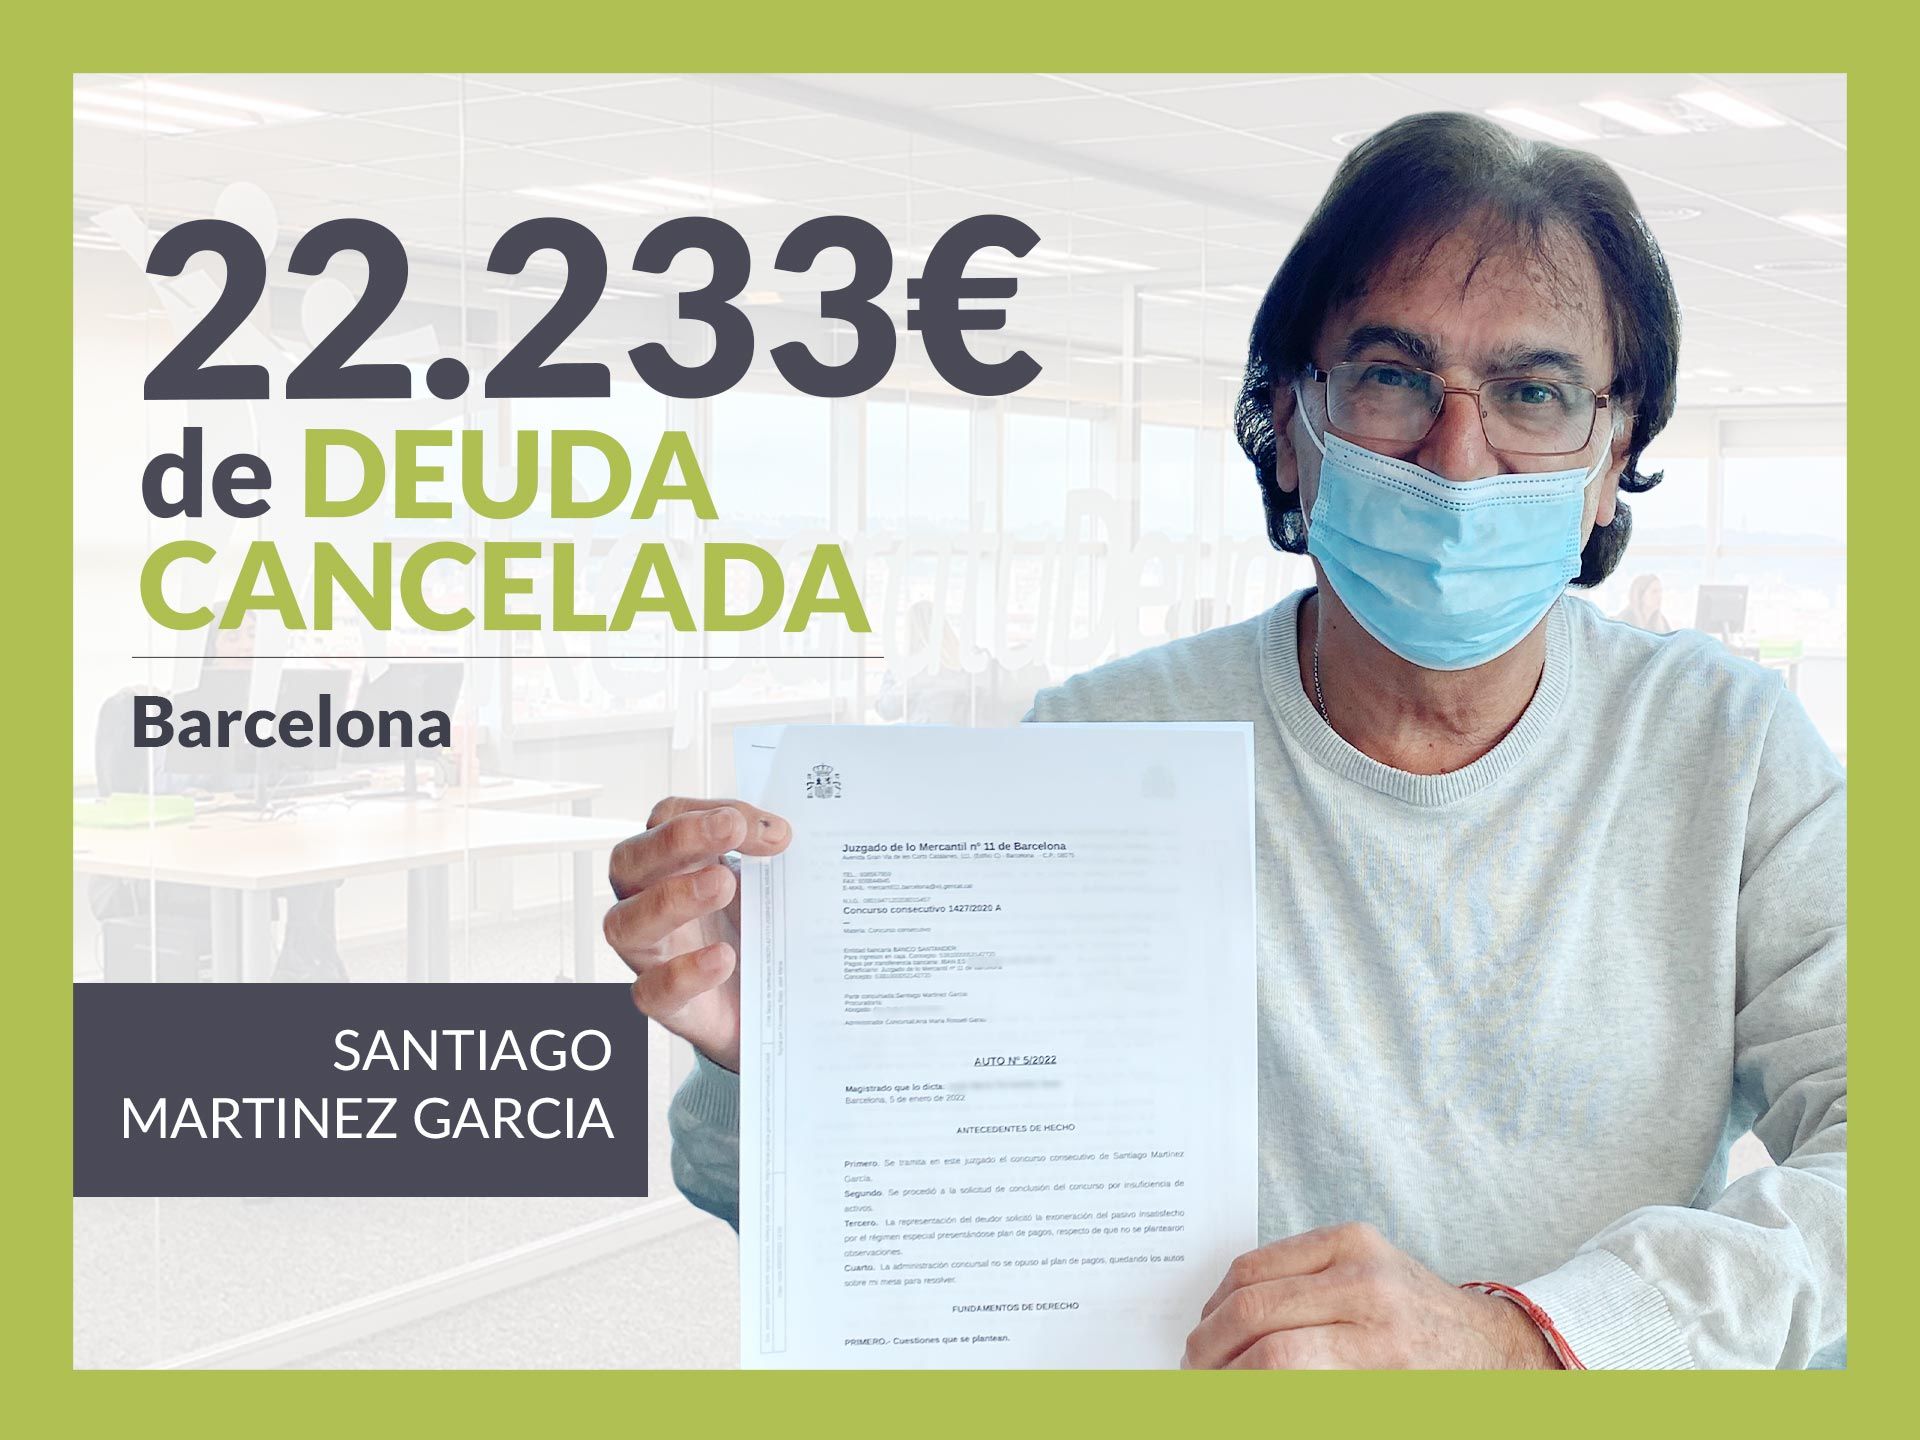 Repara tu Deuda Abogados cancela 22.233? en Barcelona (Catalunya) con la Ley de Segunda Oportunidad